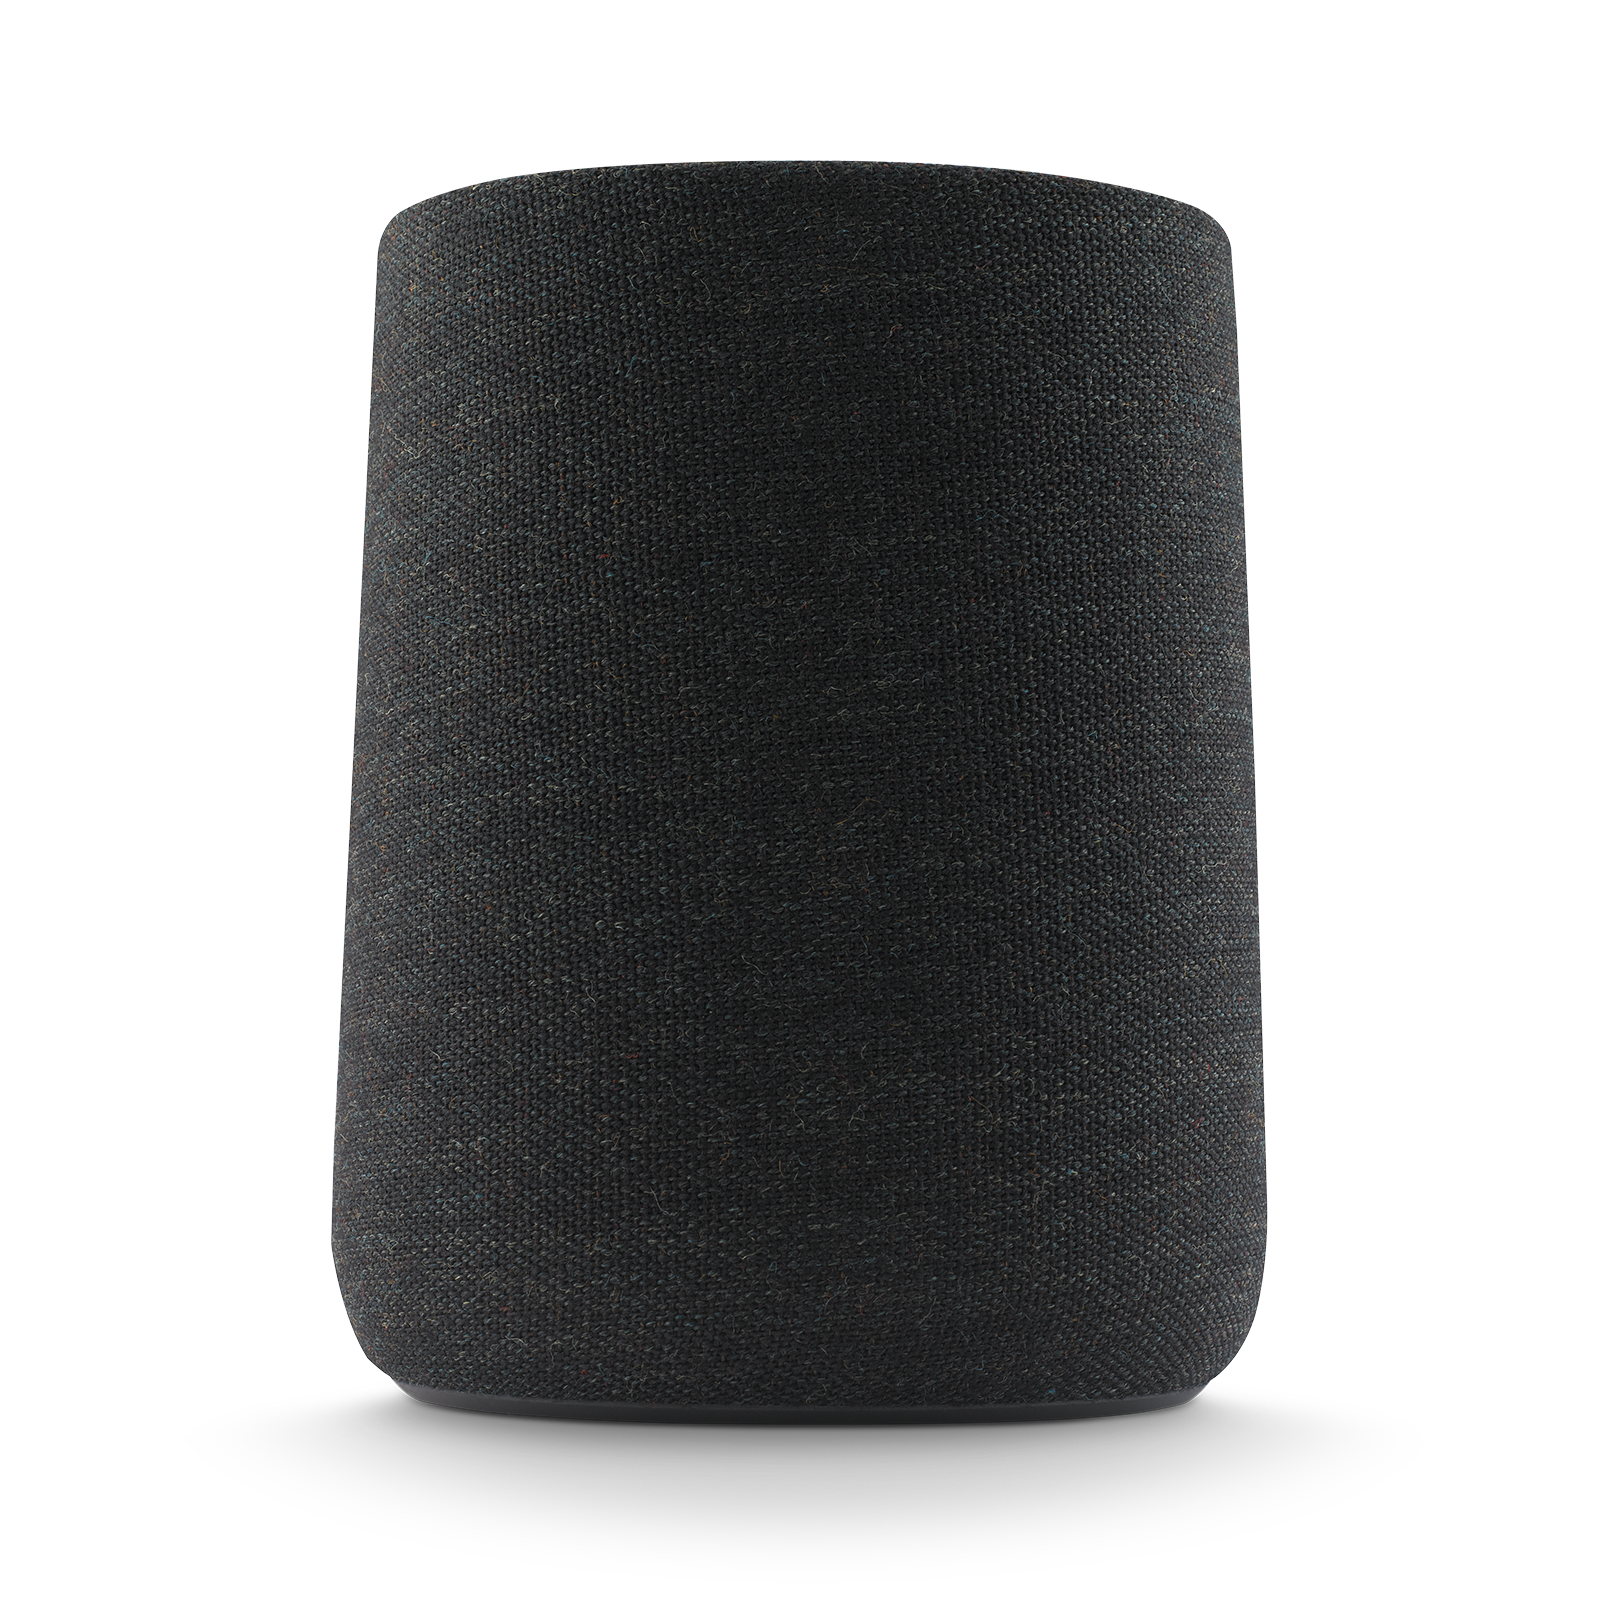 Harman Kardon Citation One MKIII - Black - All-in-one smart speaker with room-filling sound - Detailshot 1